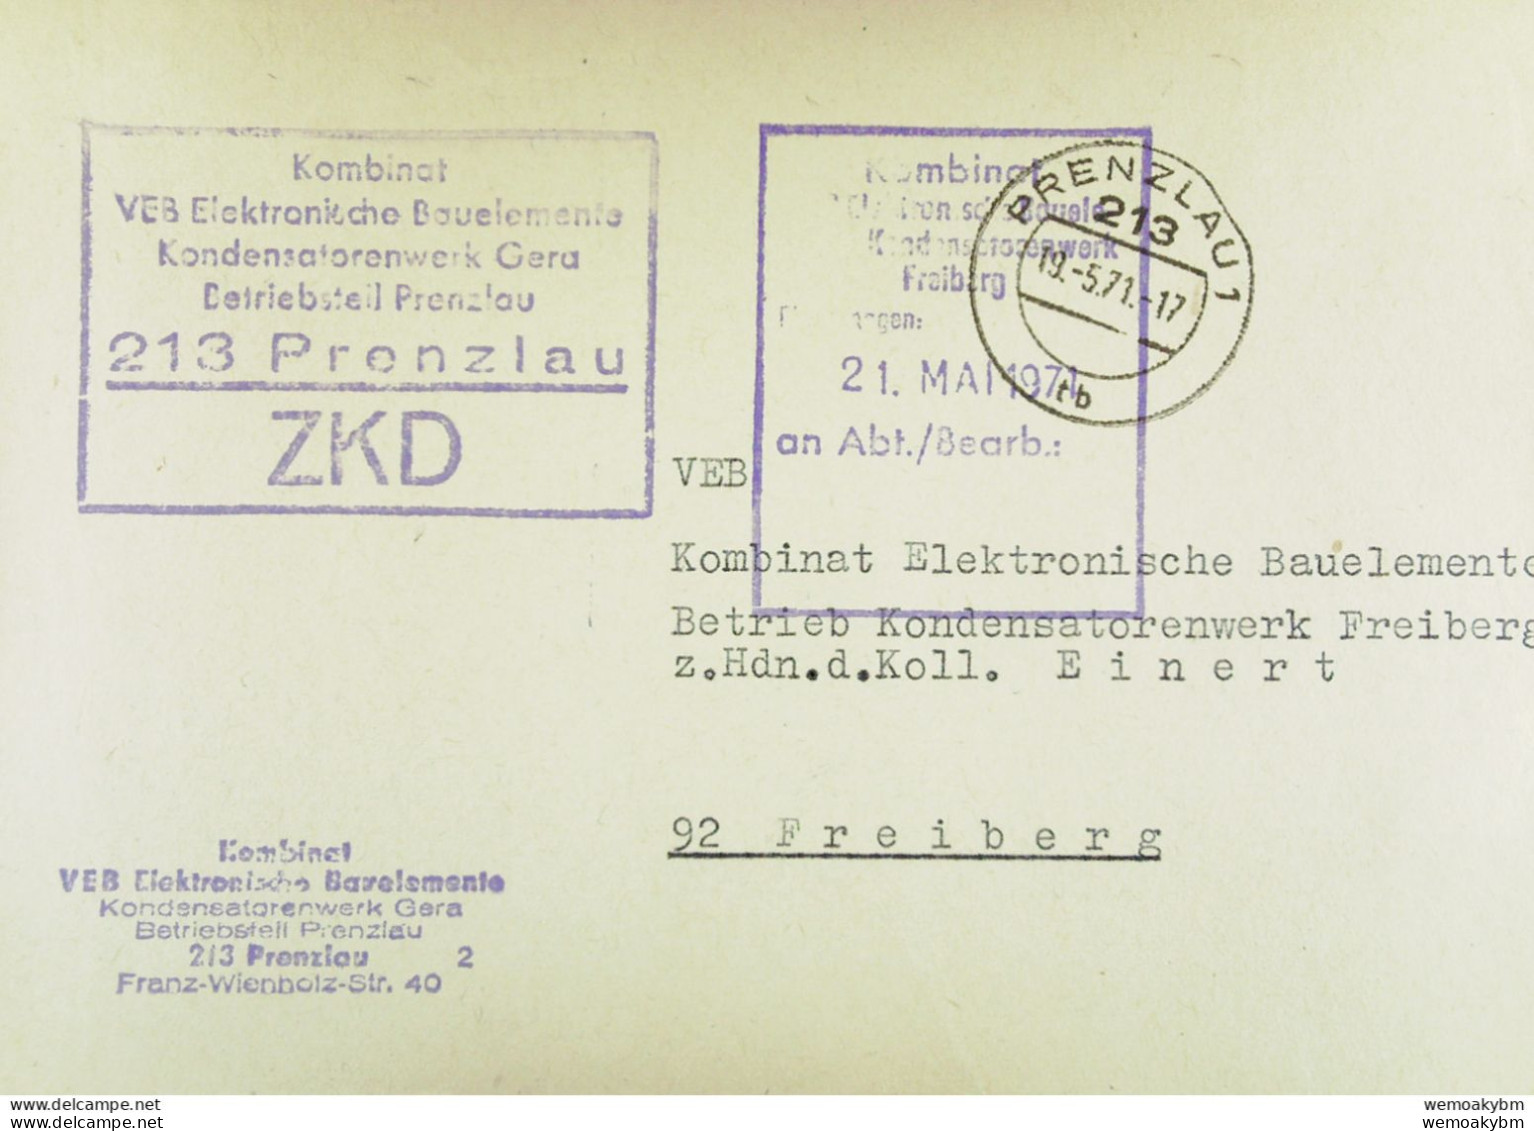 Fern-Brief Mit ZKD-Kastenstpl "Kombinat VEB Elektronische Bauelemente Kondensatorenwerk Gera BT 213 PRENZLAU" V 19.5.71 - Service Central De Courrier